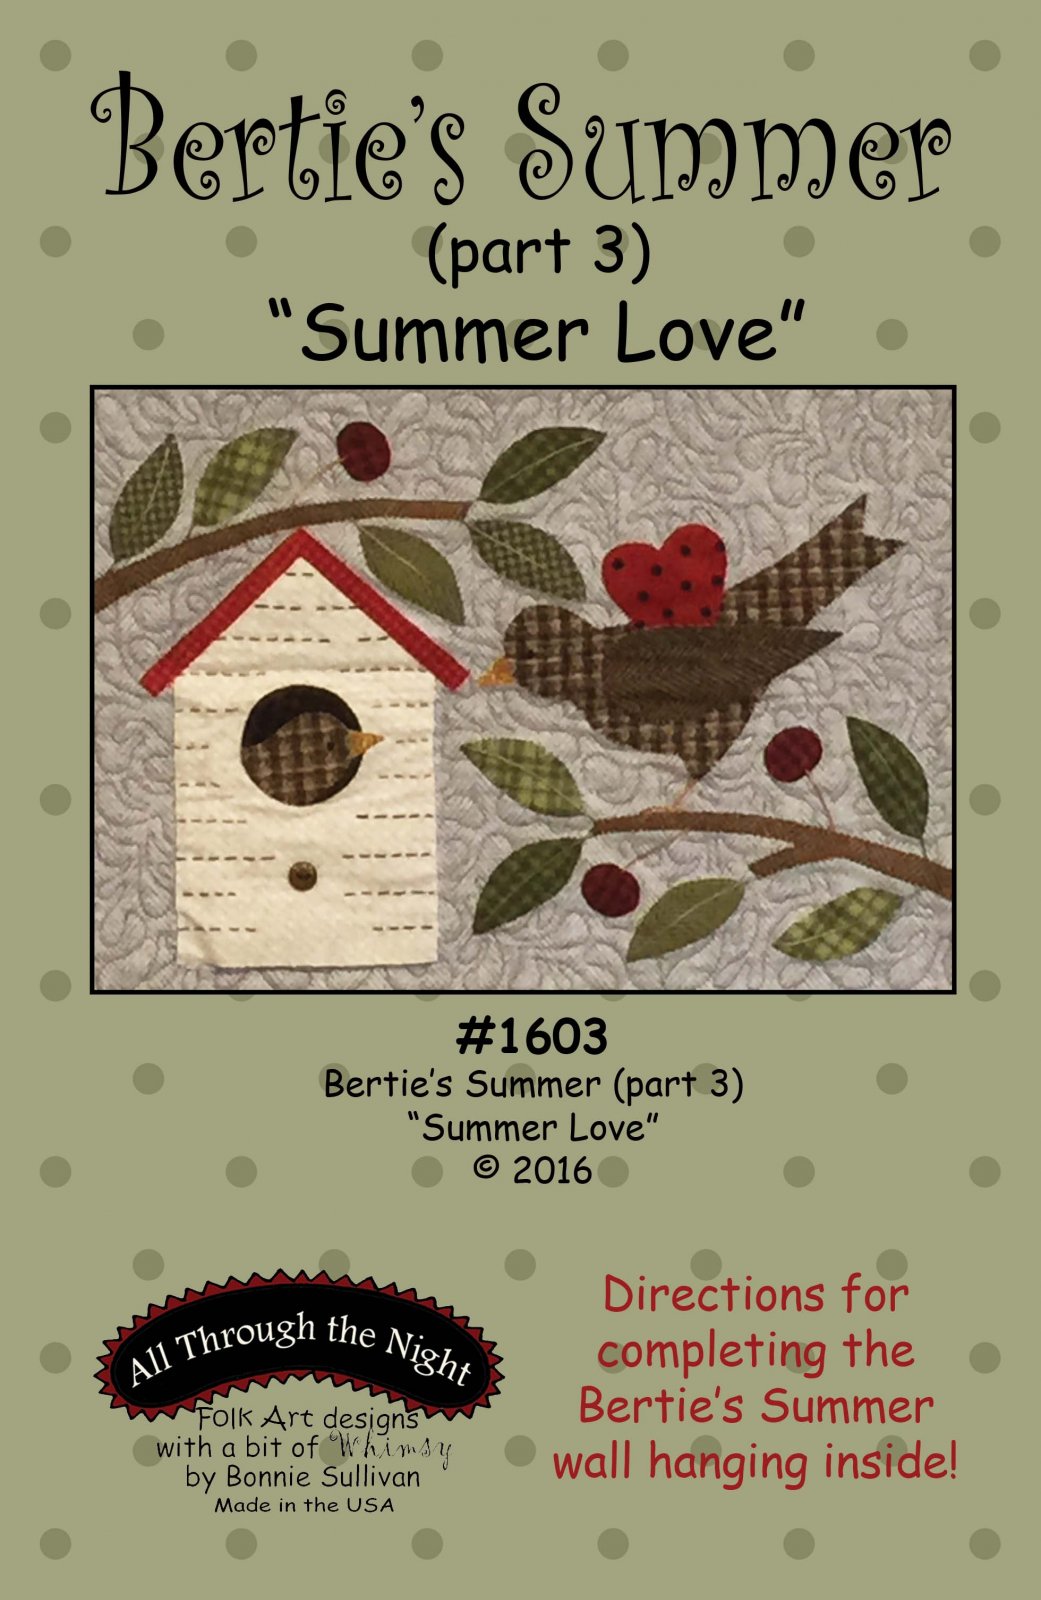 1603 - Bertie's Summer "Summer Love" (part 3)